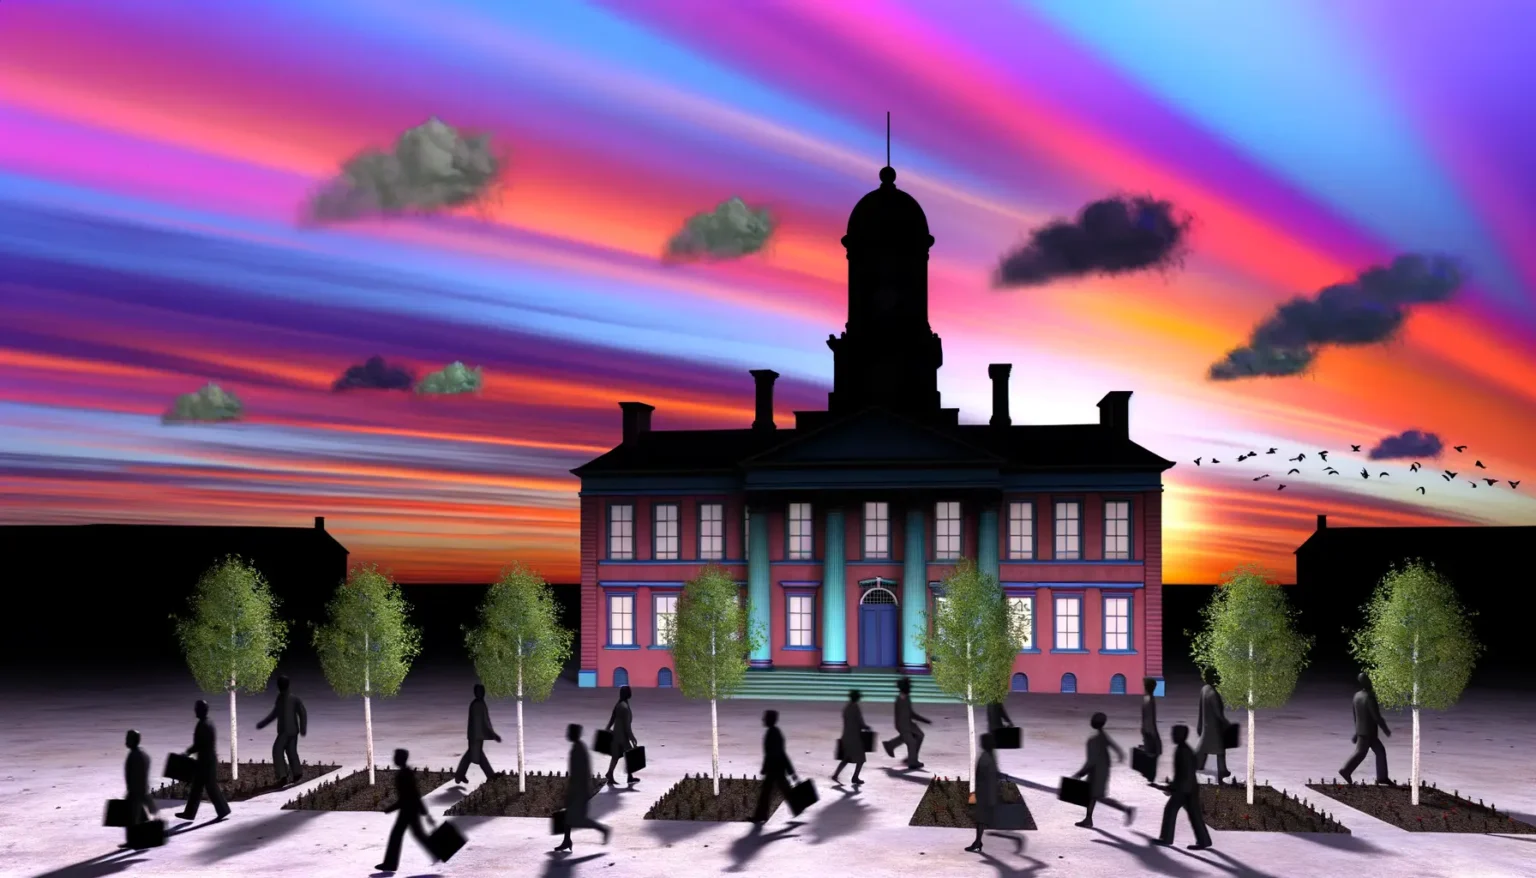 Illustration eines historischen Gebäudes bei Sonnenuntergang mit lebhaften rosa und blauen Himmelsfarben. Silhouetten von Menschen, die vorbei gehen, und Bäume im Vordergrund, während Vögel am farbenfrohen Himmel fliegen.